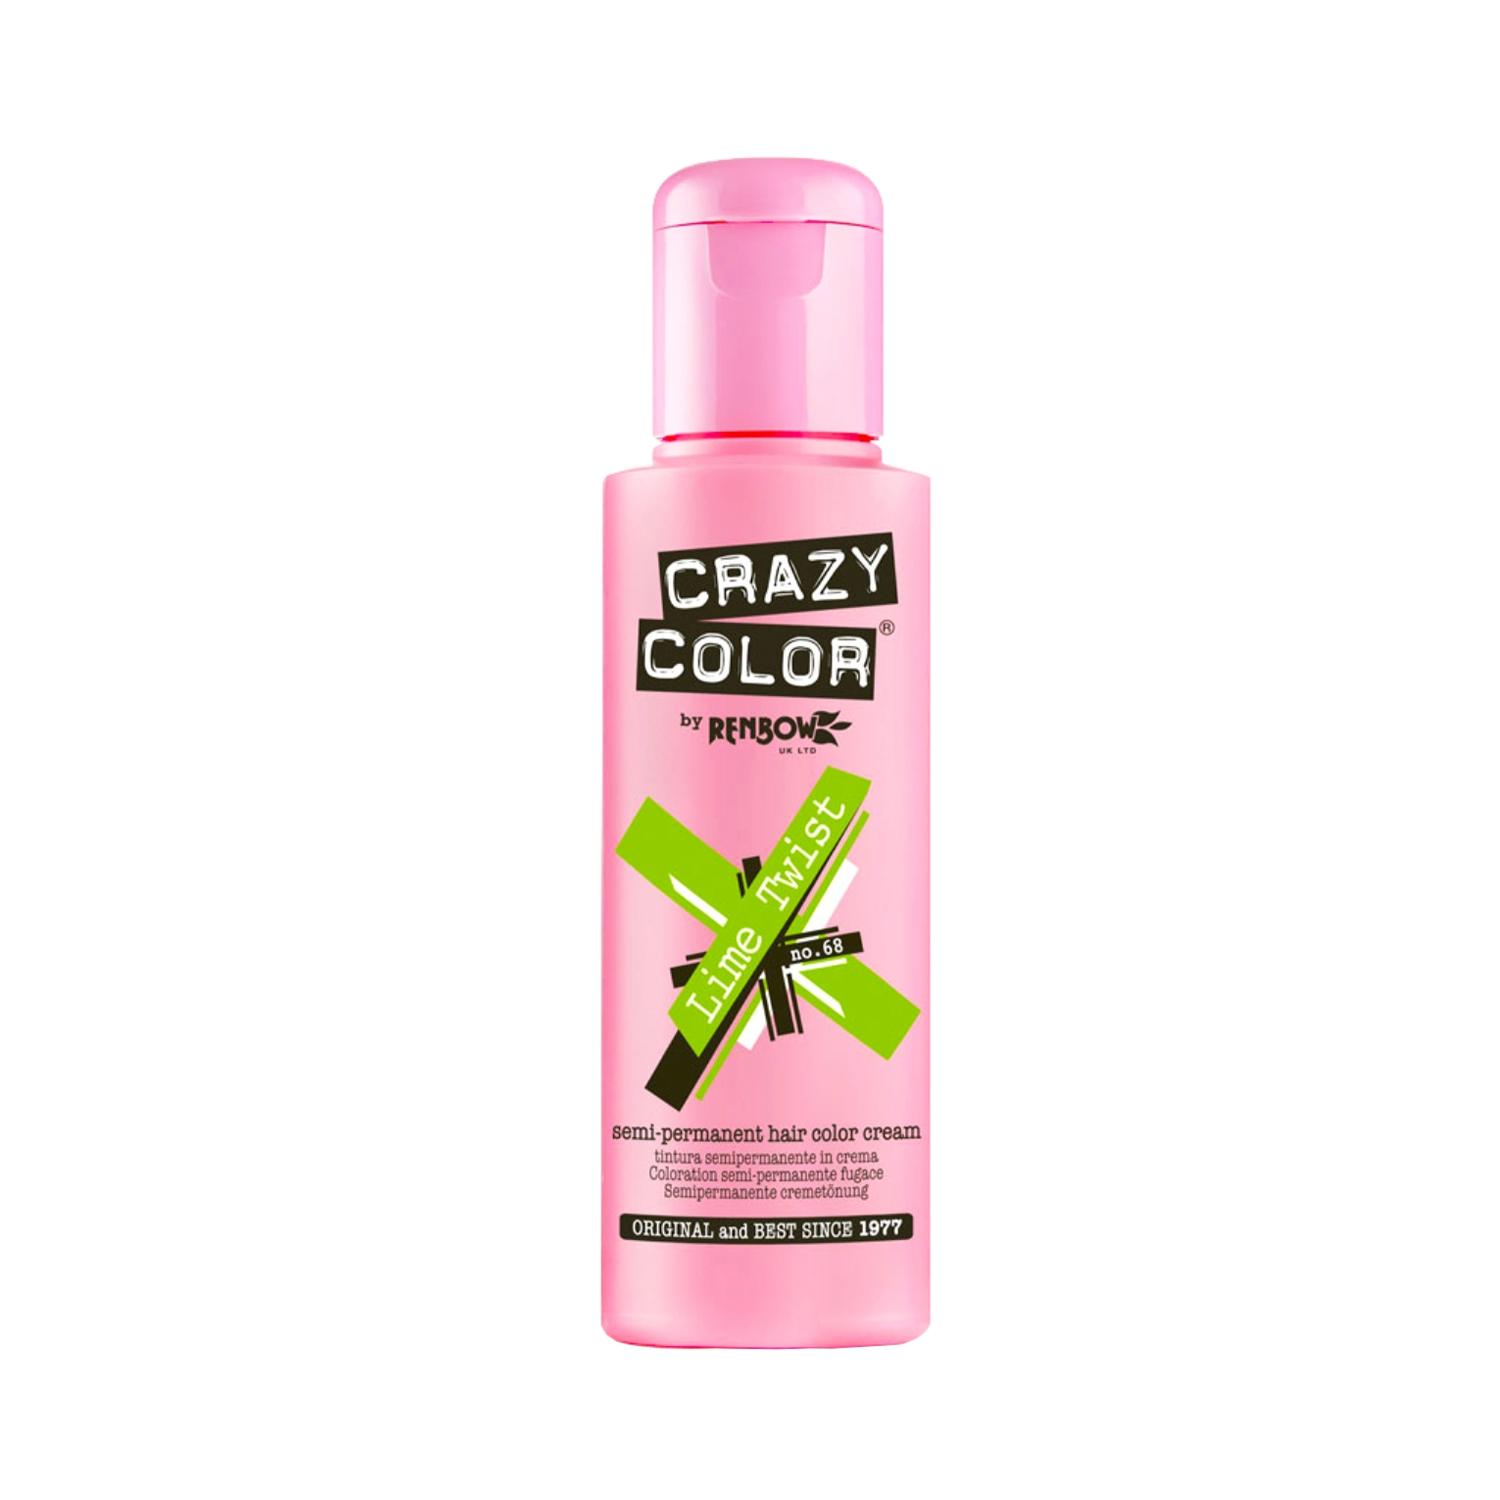 Crazy Color Semi Permanent Hair Color Cream - 68 Limetwist (100ml)